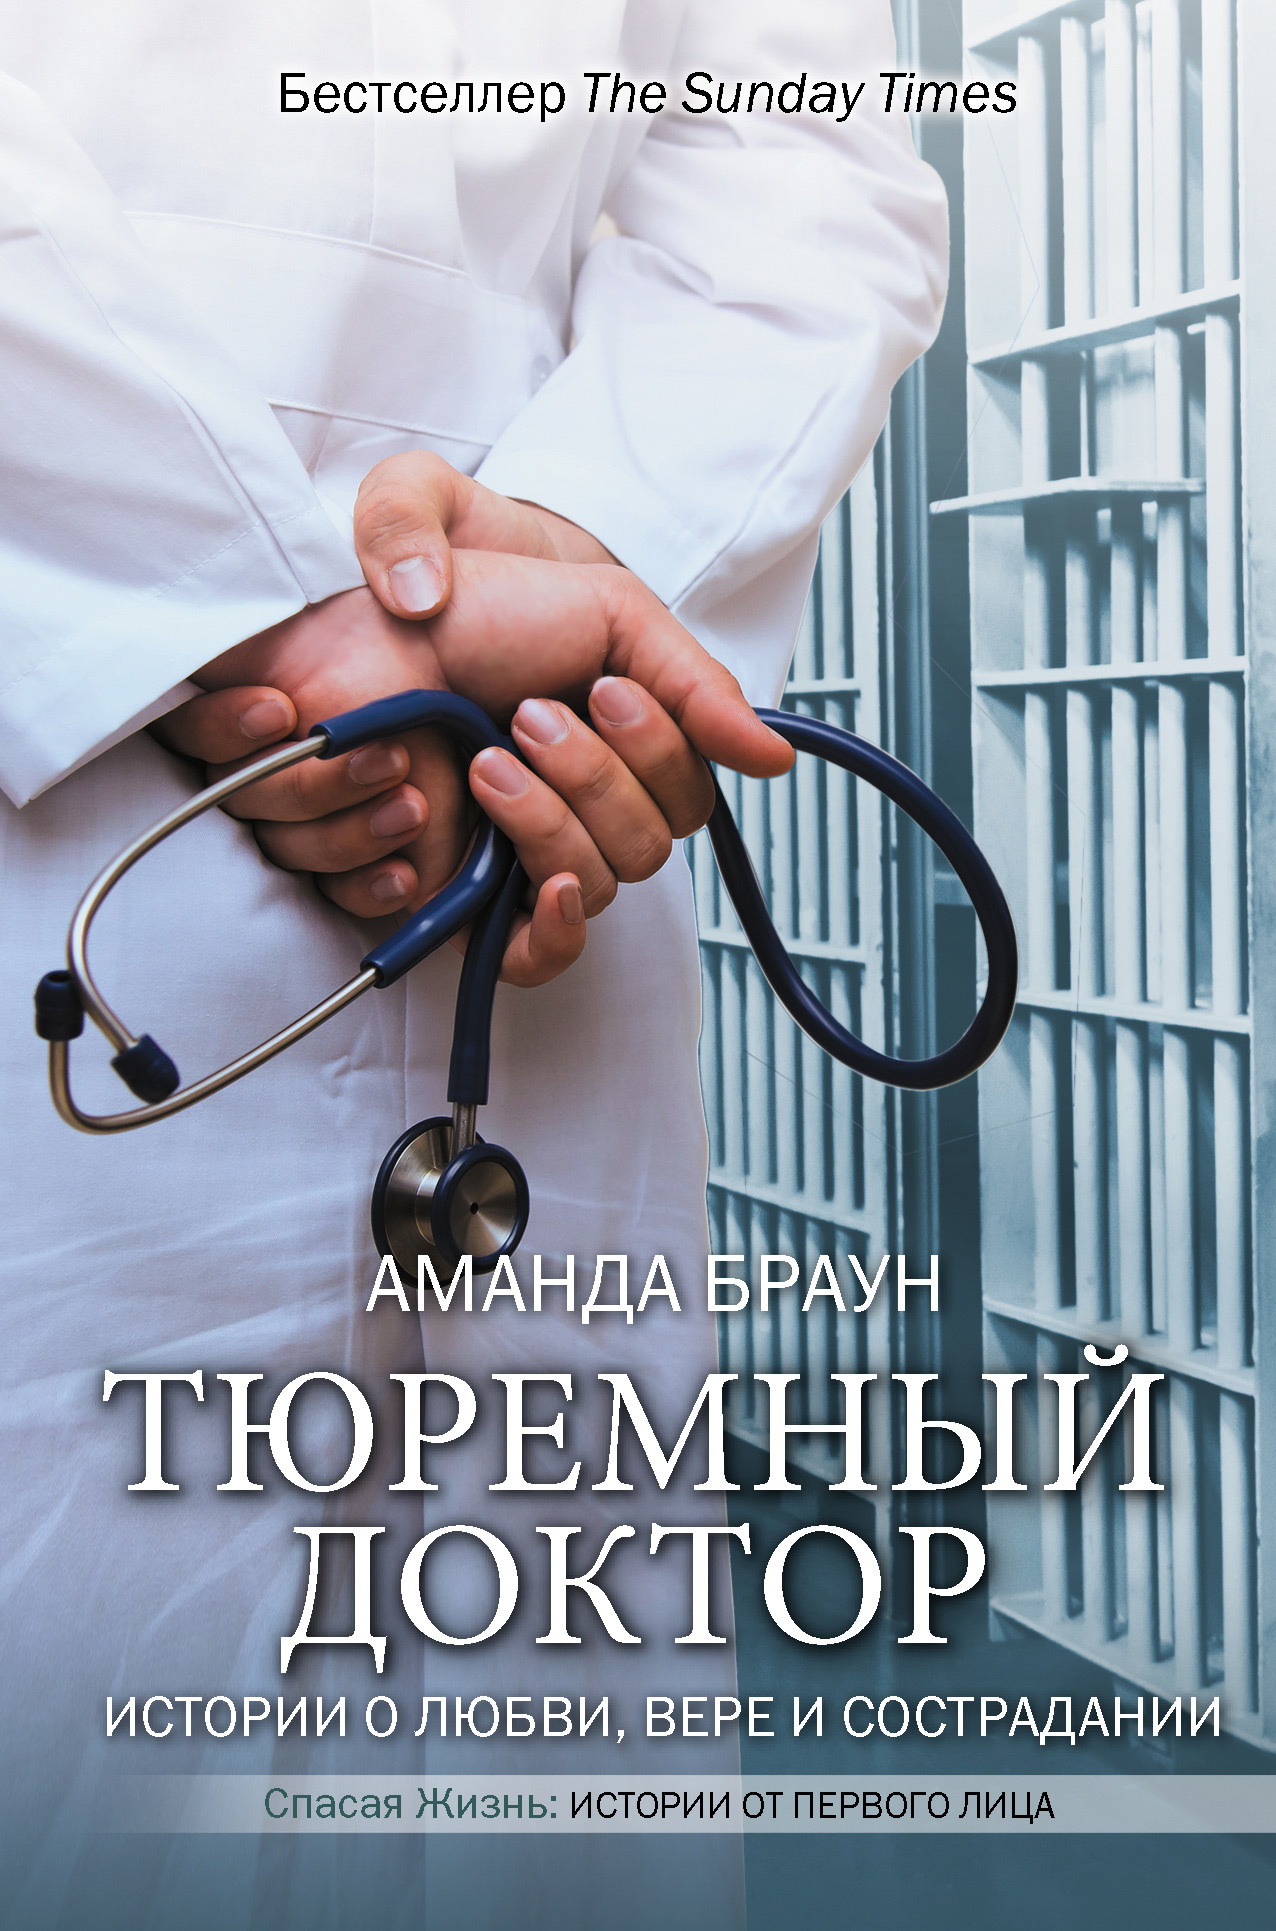 обложка книги Тюремный доктор. Истории о любви, вере и сострадании